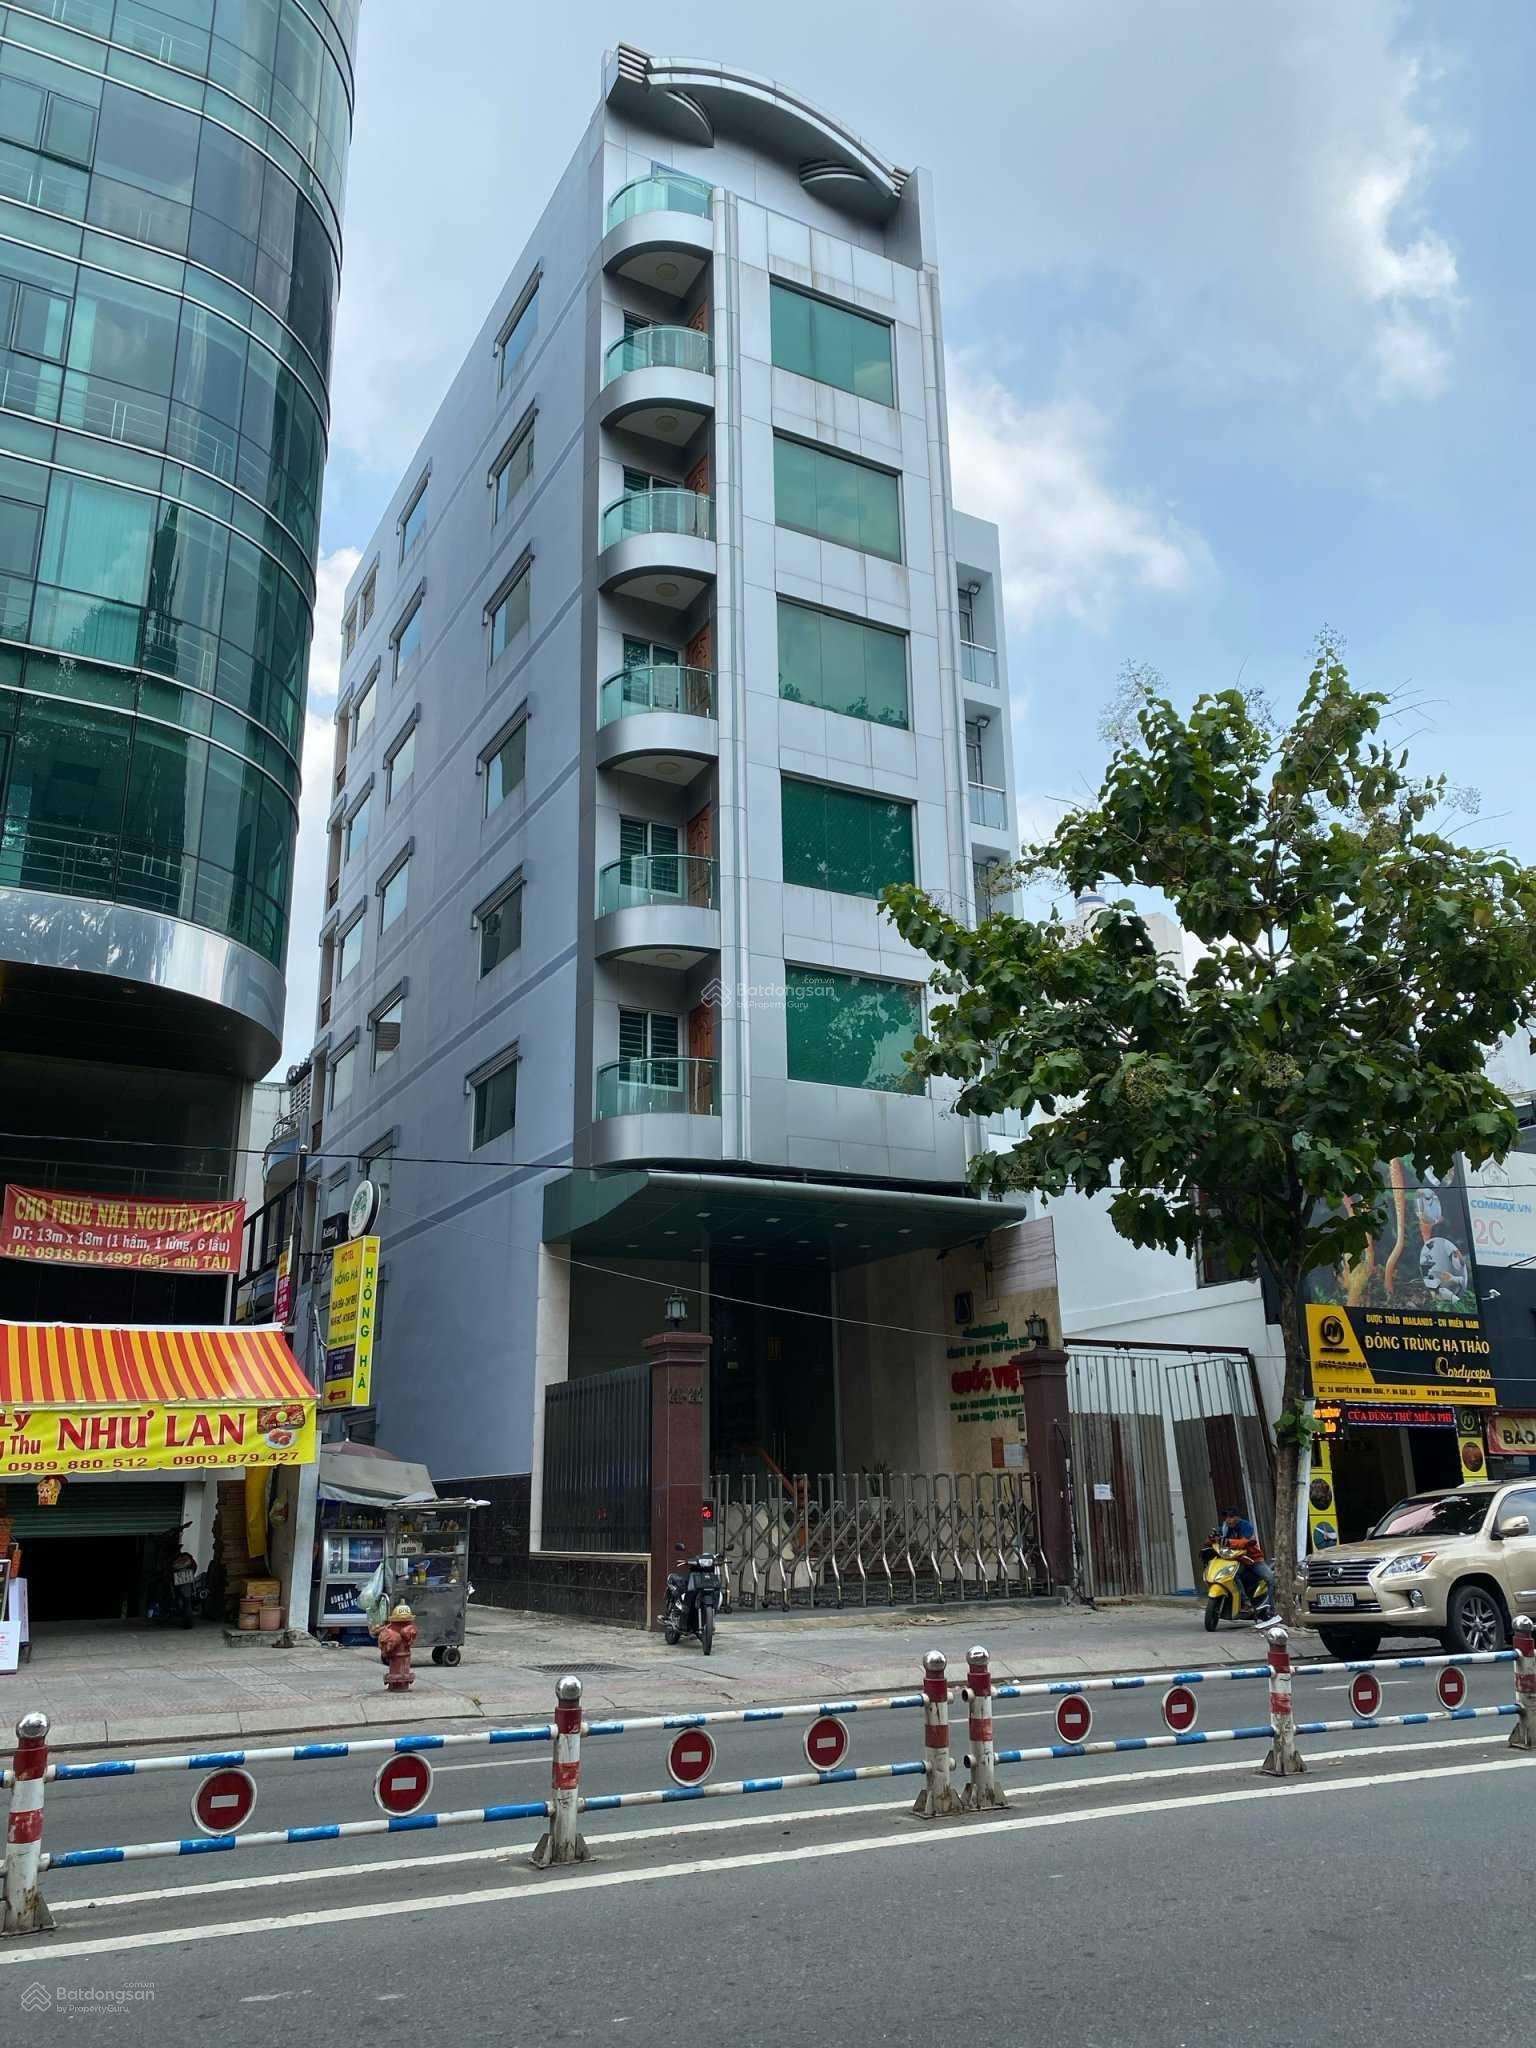 Cần bán nhanh tòa nhà VP góc 2 MT Nguyễn Thị Minh Khai Q1. Chỉ 80 tỷ cho tòa nhà 1h + 8 tầng